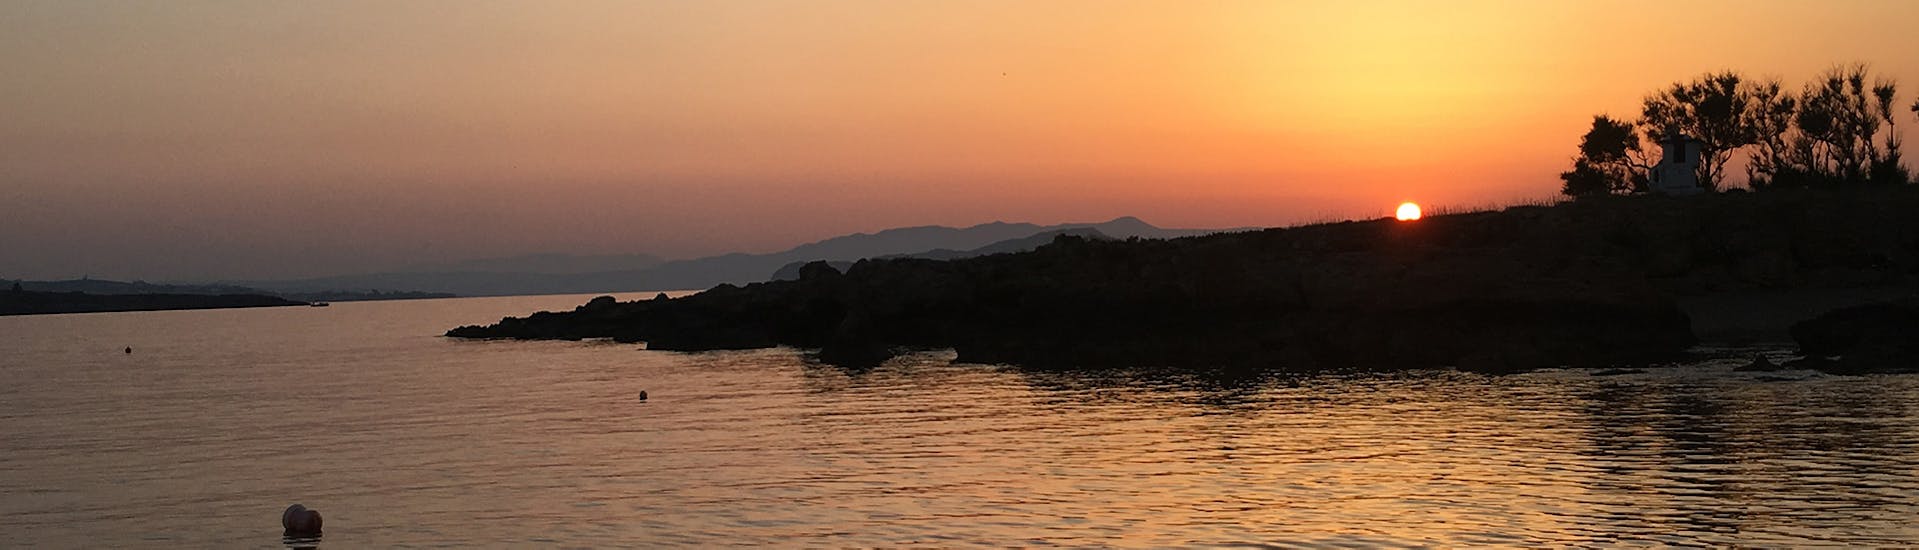 L'isola dove andremo durante il giro in barca al tramonto da Chania a Lazaretta con Manos Cruises Chania.